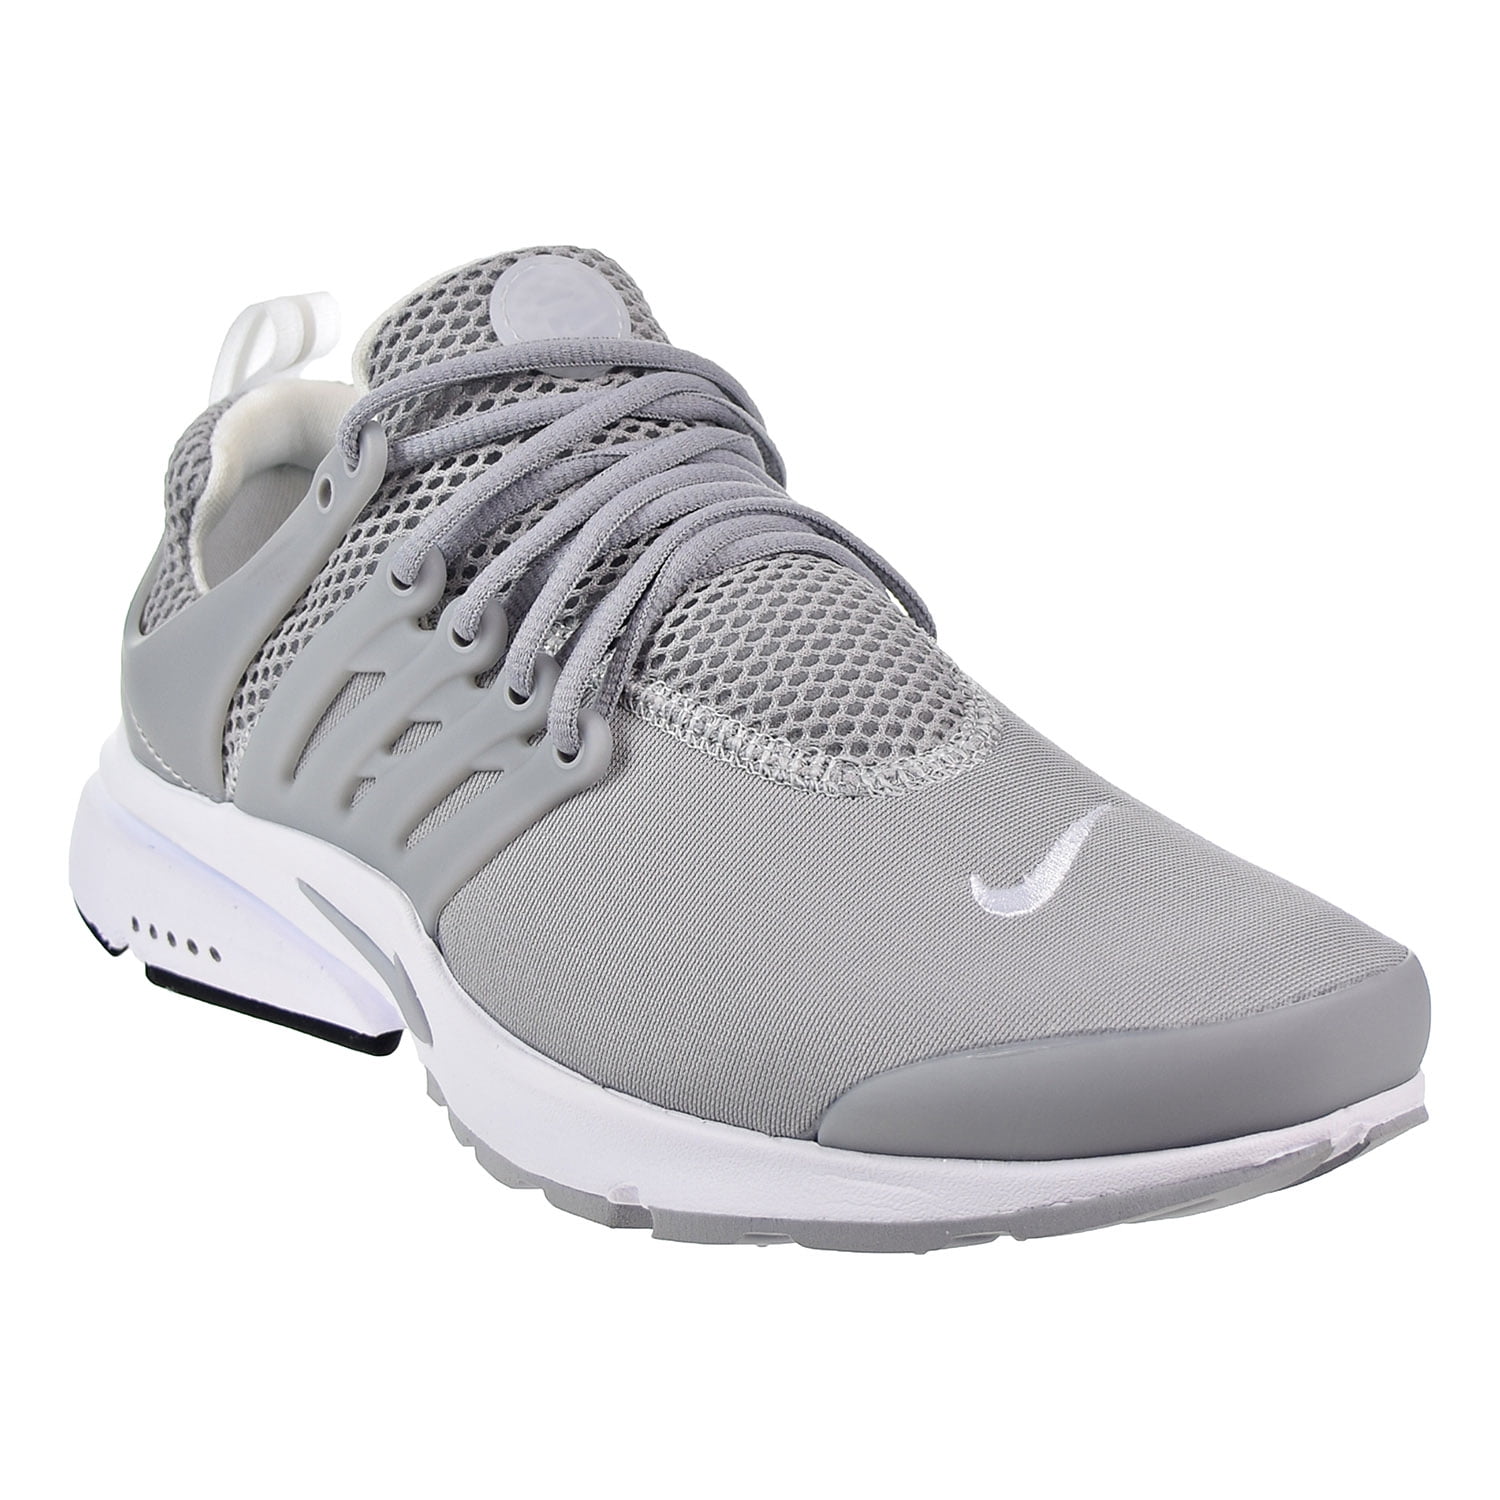 Aap mengsel Behandeling Nike Air Presto Essential Men's Running Shoes Wolf Grey/Wolf Grey-White  848187-013 - Walmart.com